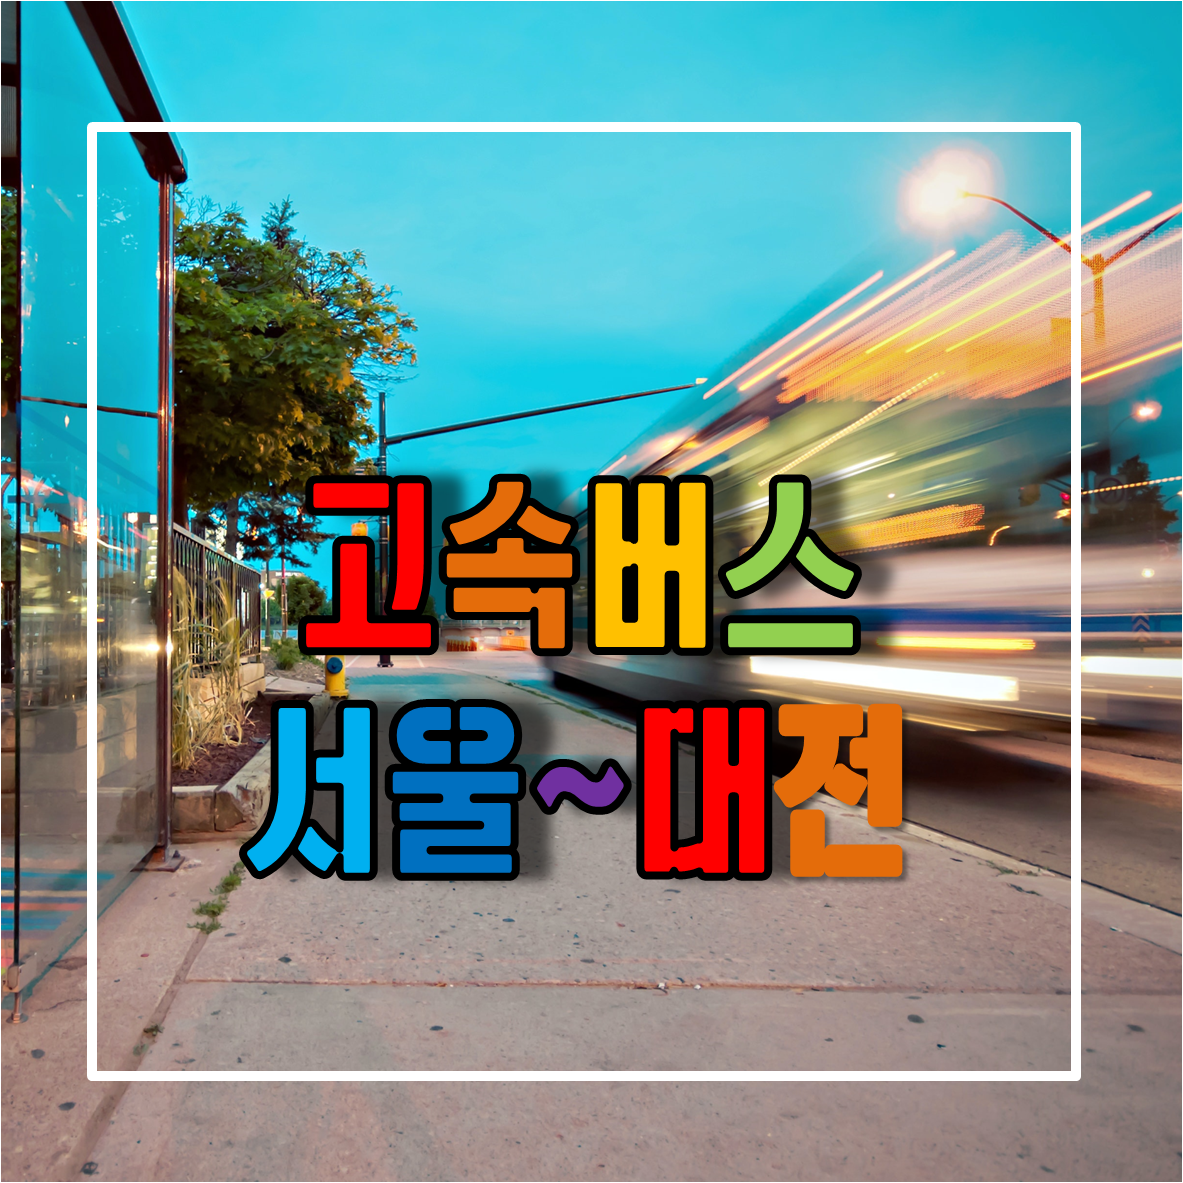 서울에서 대전가는 고속버스 시간표